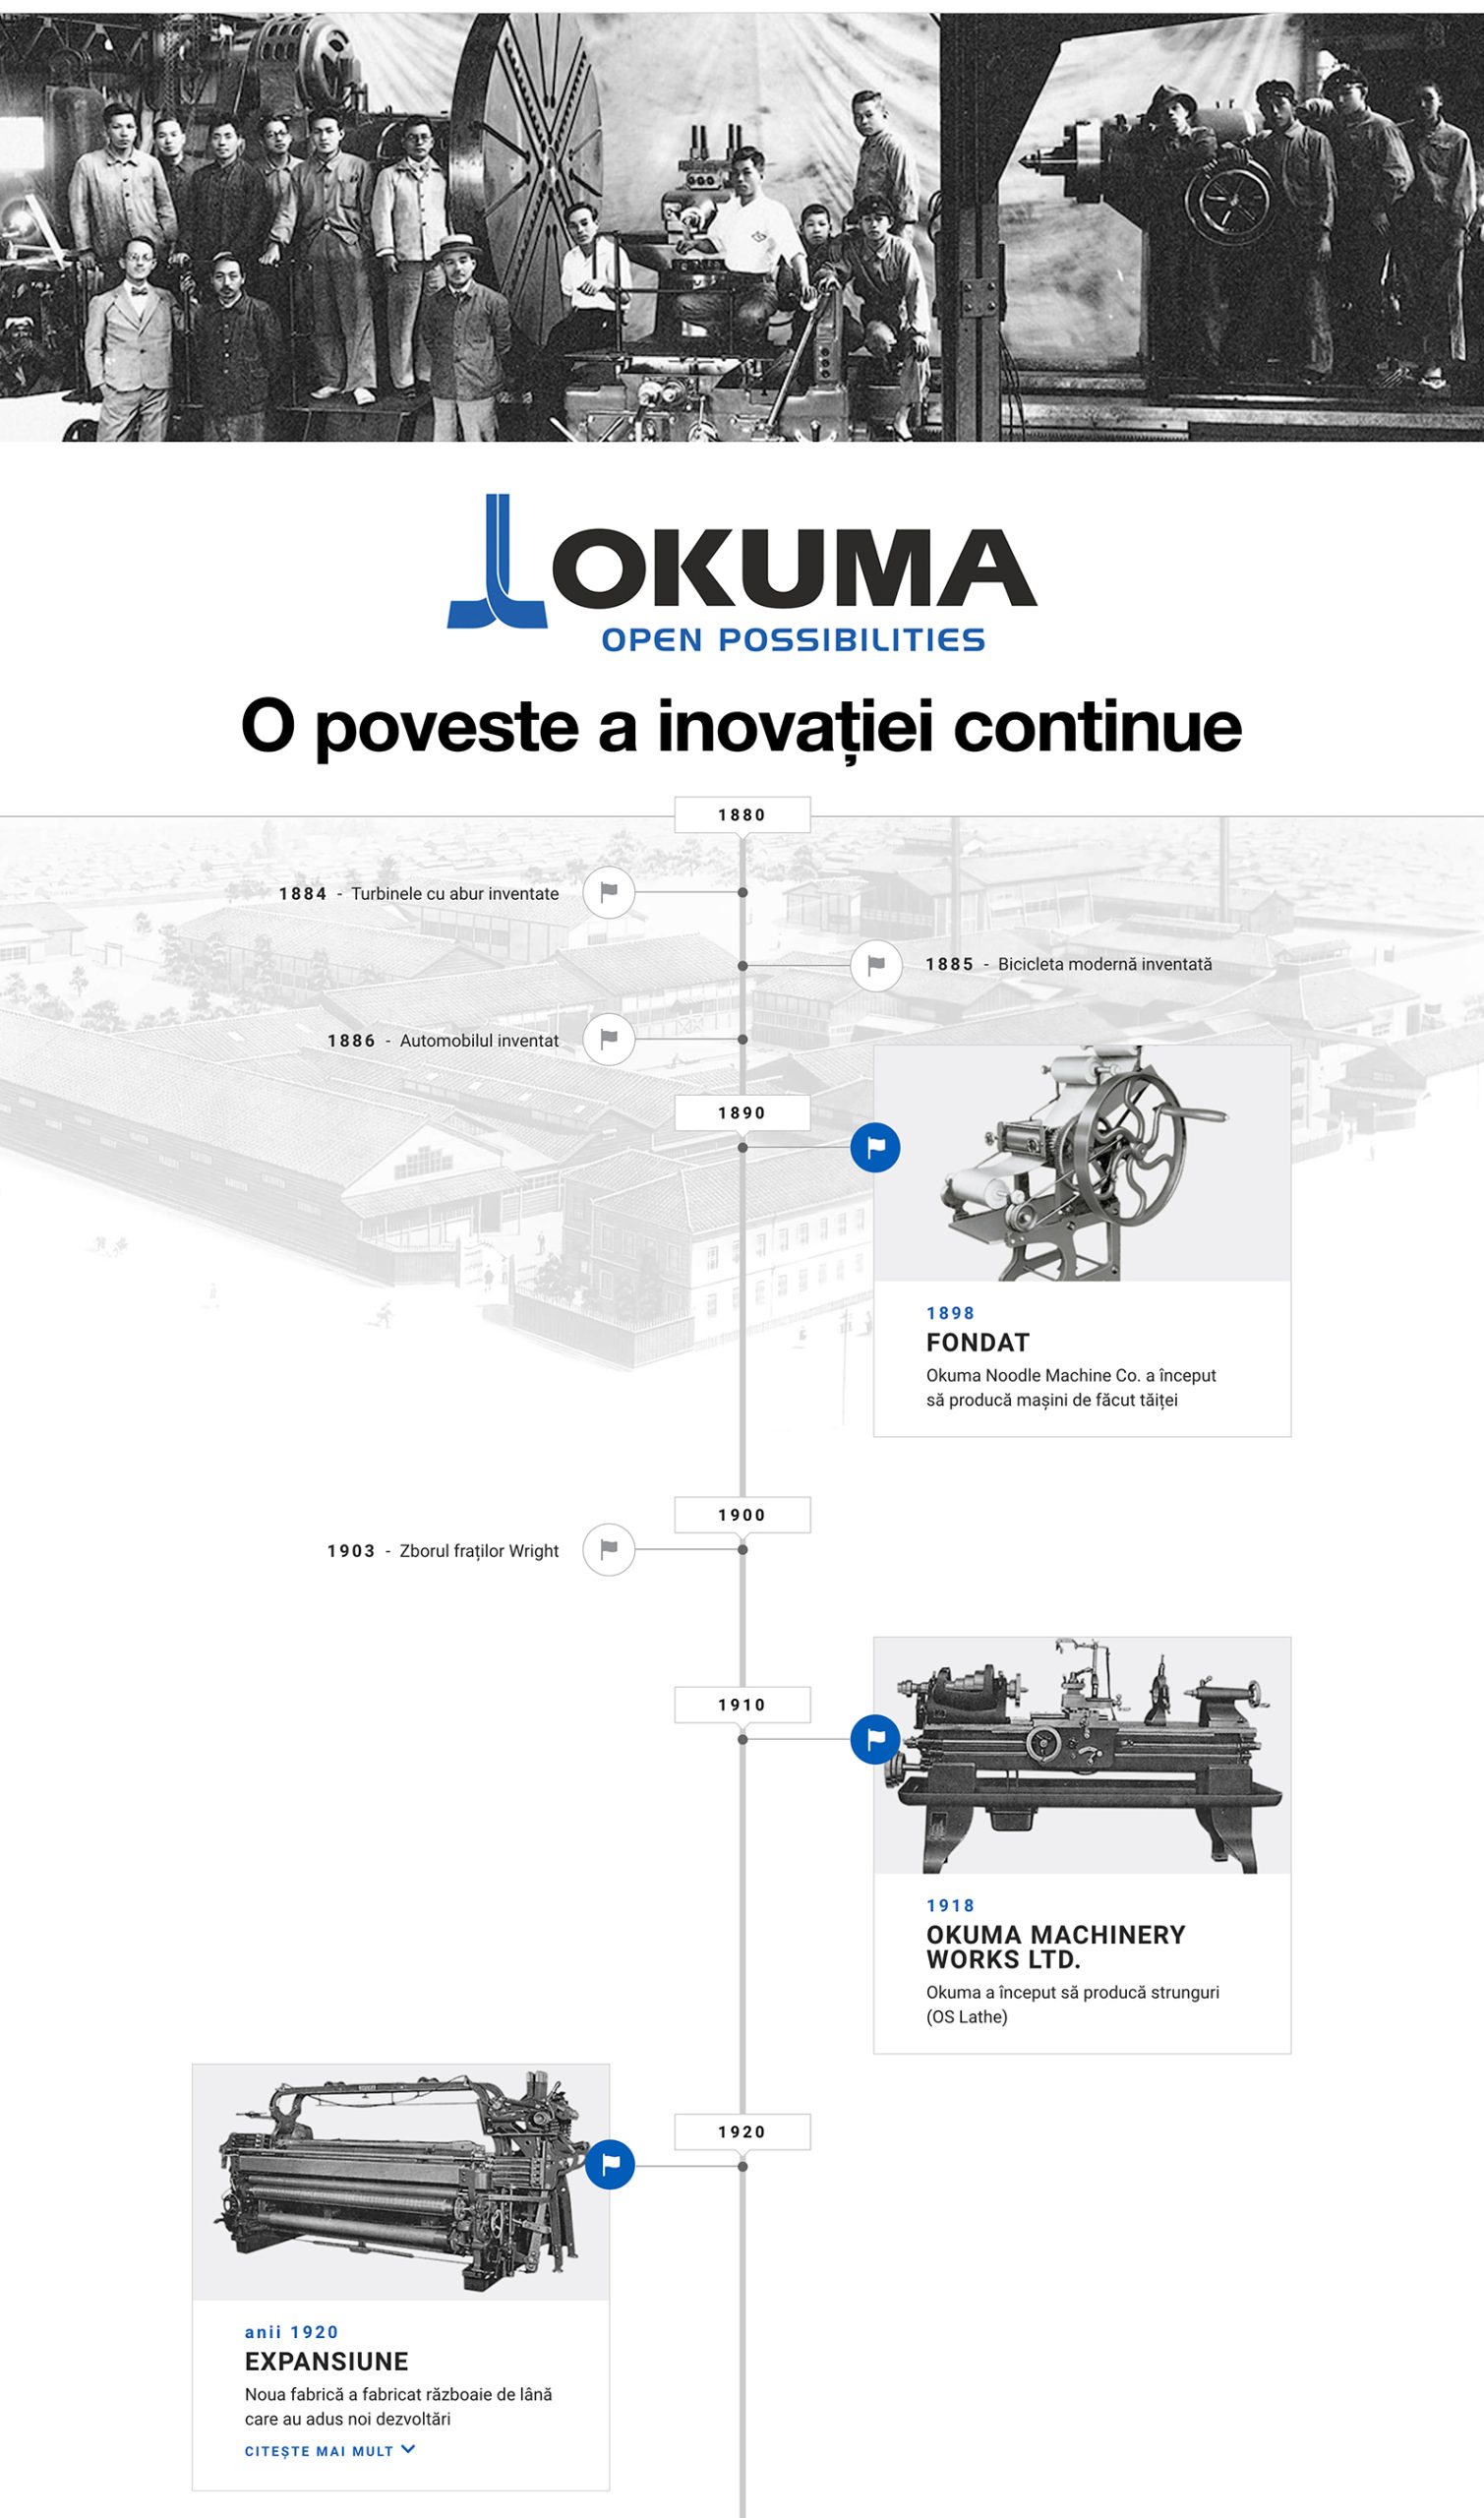 Istoric Okuma Corporation - 125 de ani